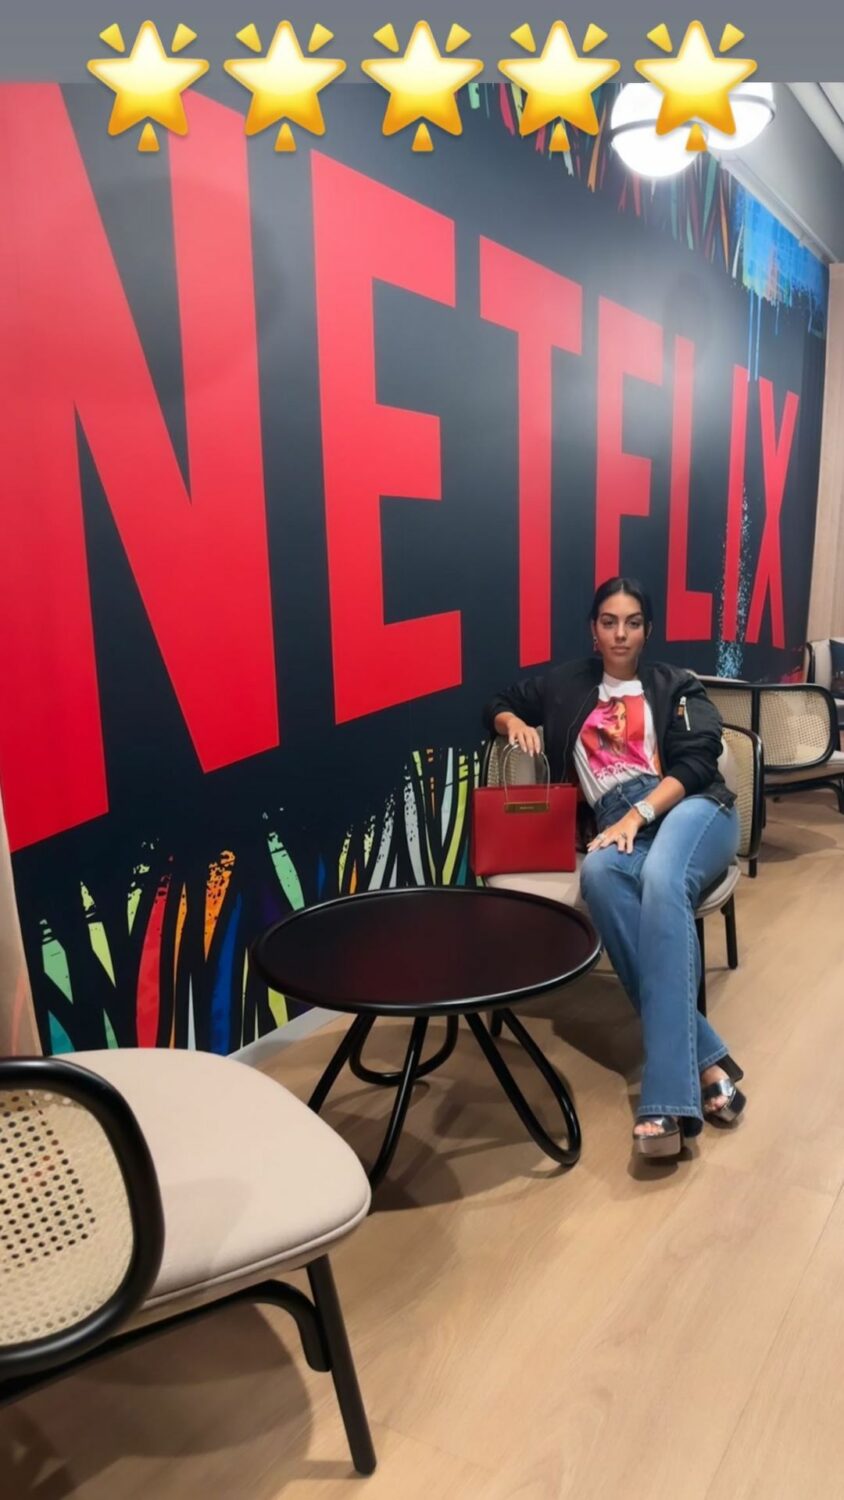 No dia da grande estreia, Georgina Rodríguez mostra-se nos estúdios da Netflix: &#8220;Família&#8221;